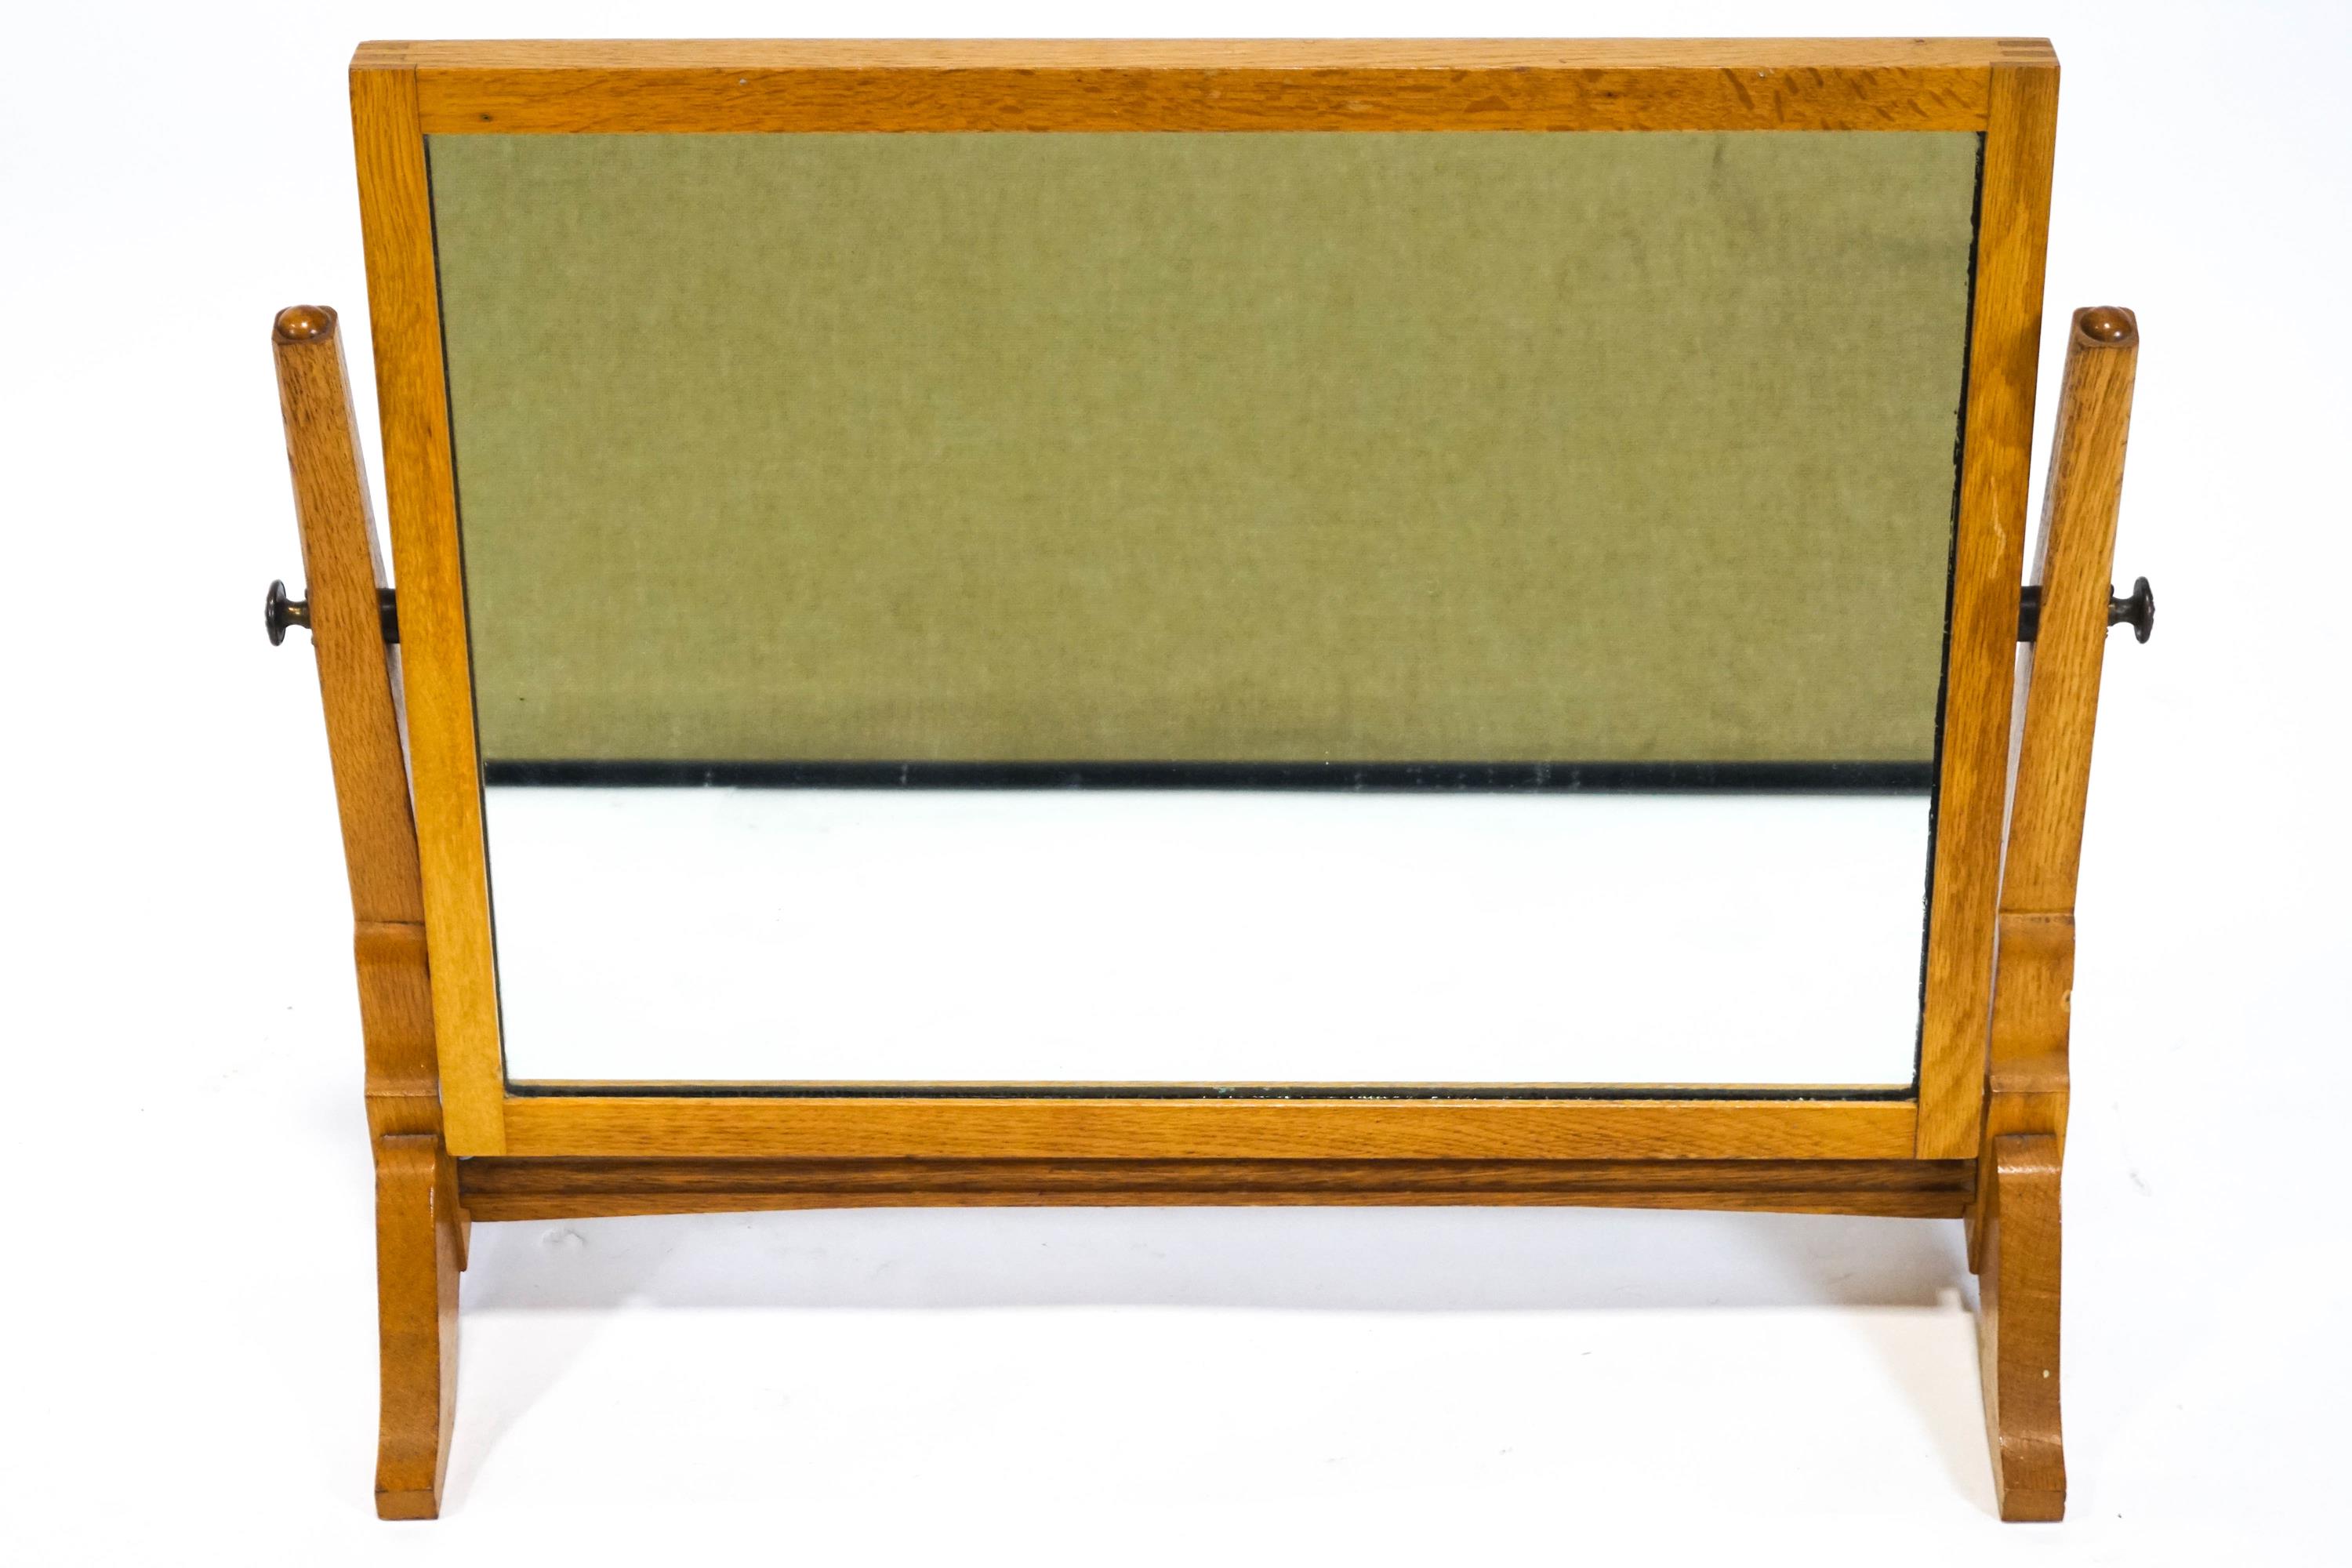 An Edwardian oak swing frame dressing table mirror,